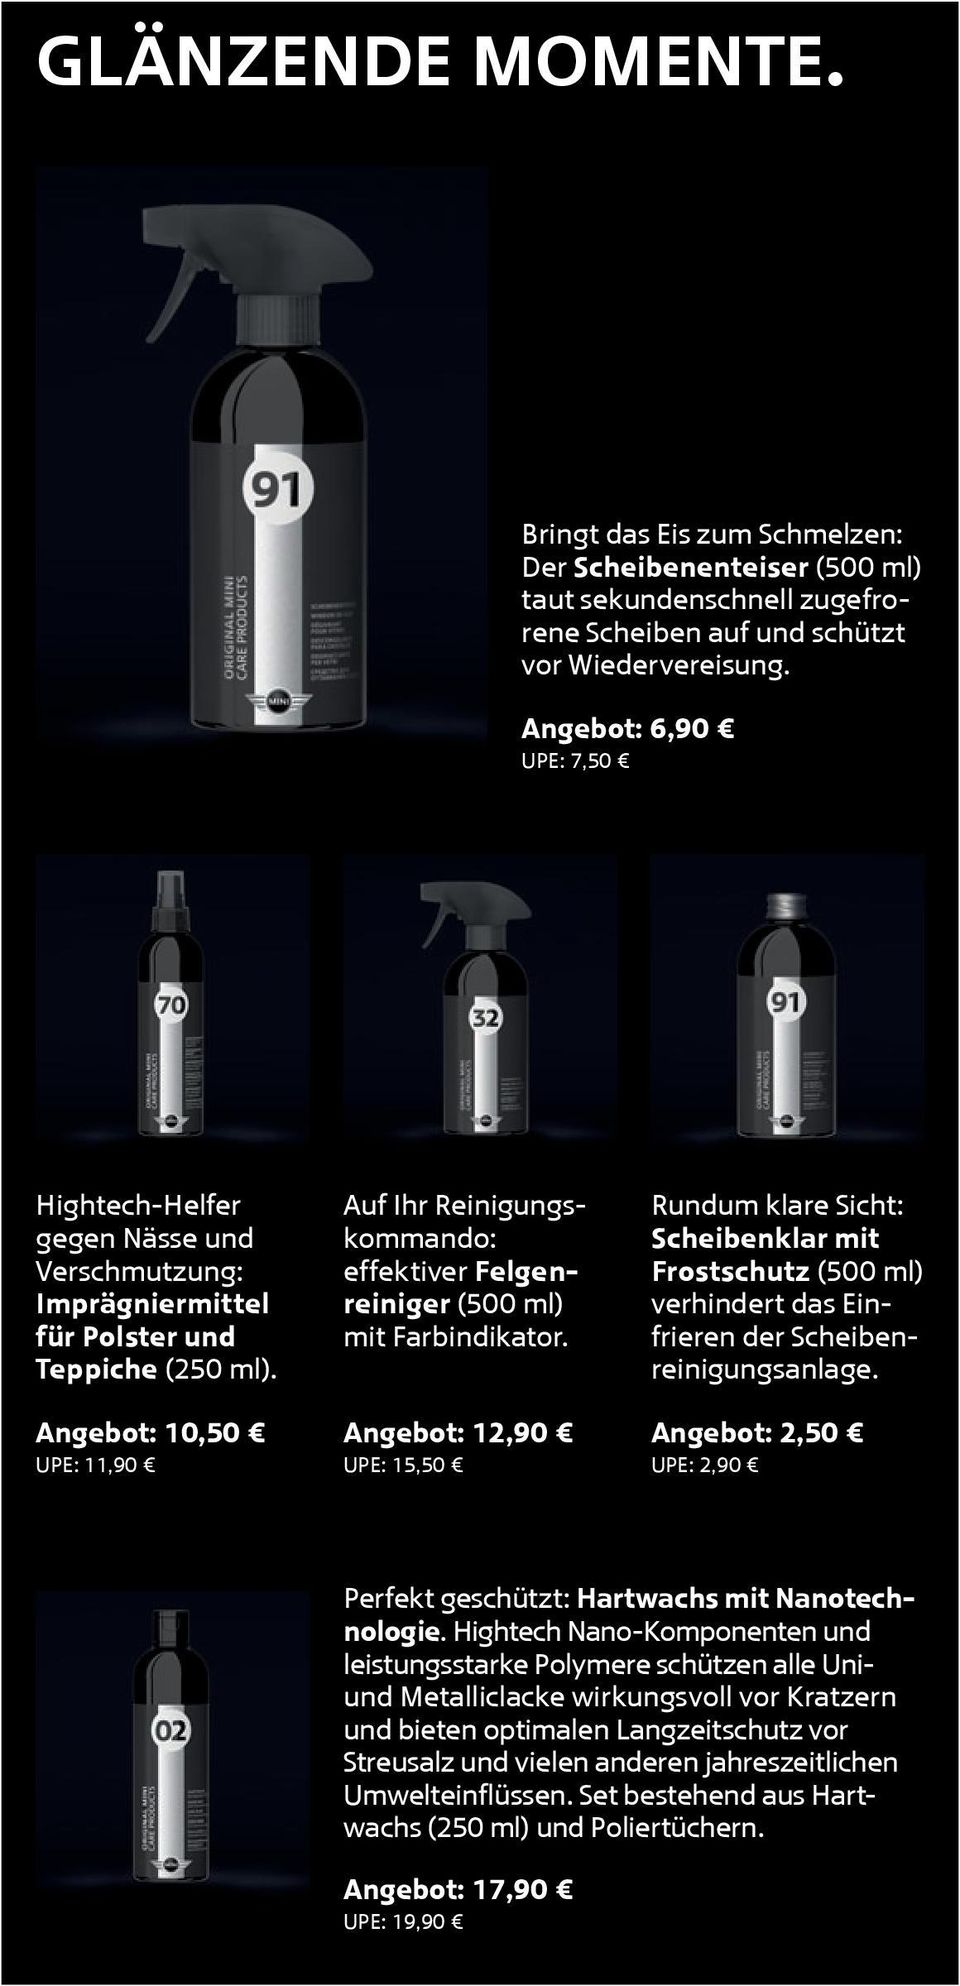 Angebot: 10,50 UPE: 11,90 Auf Ihr Reinigungskommando: effektiver Felgenreiniger (500 ml) mit Farbindikator.